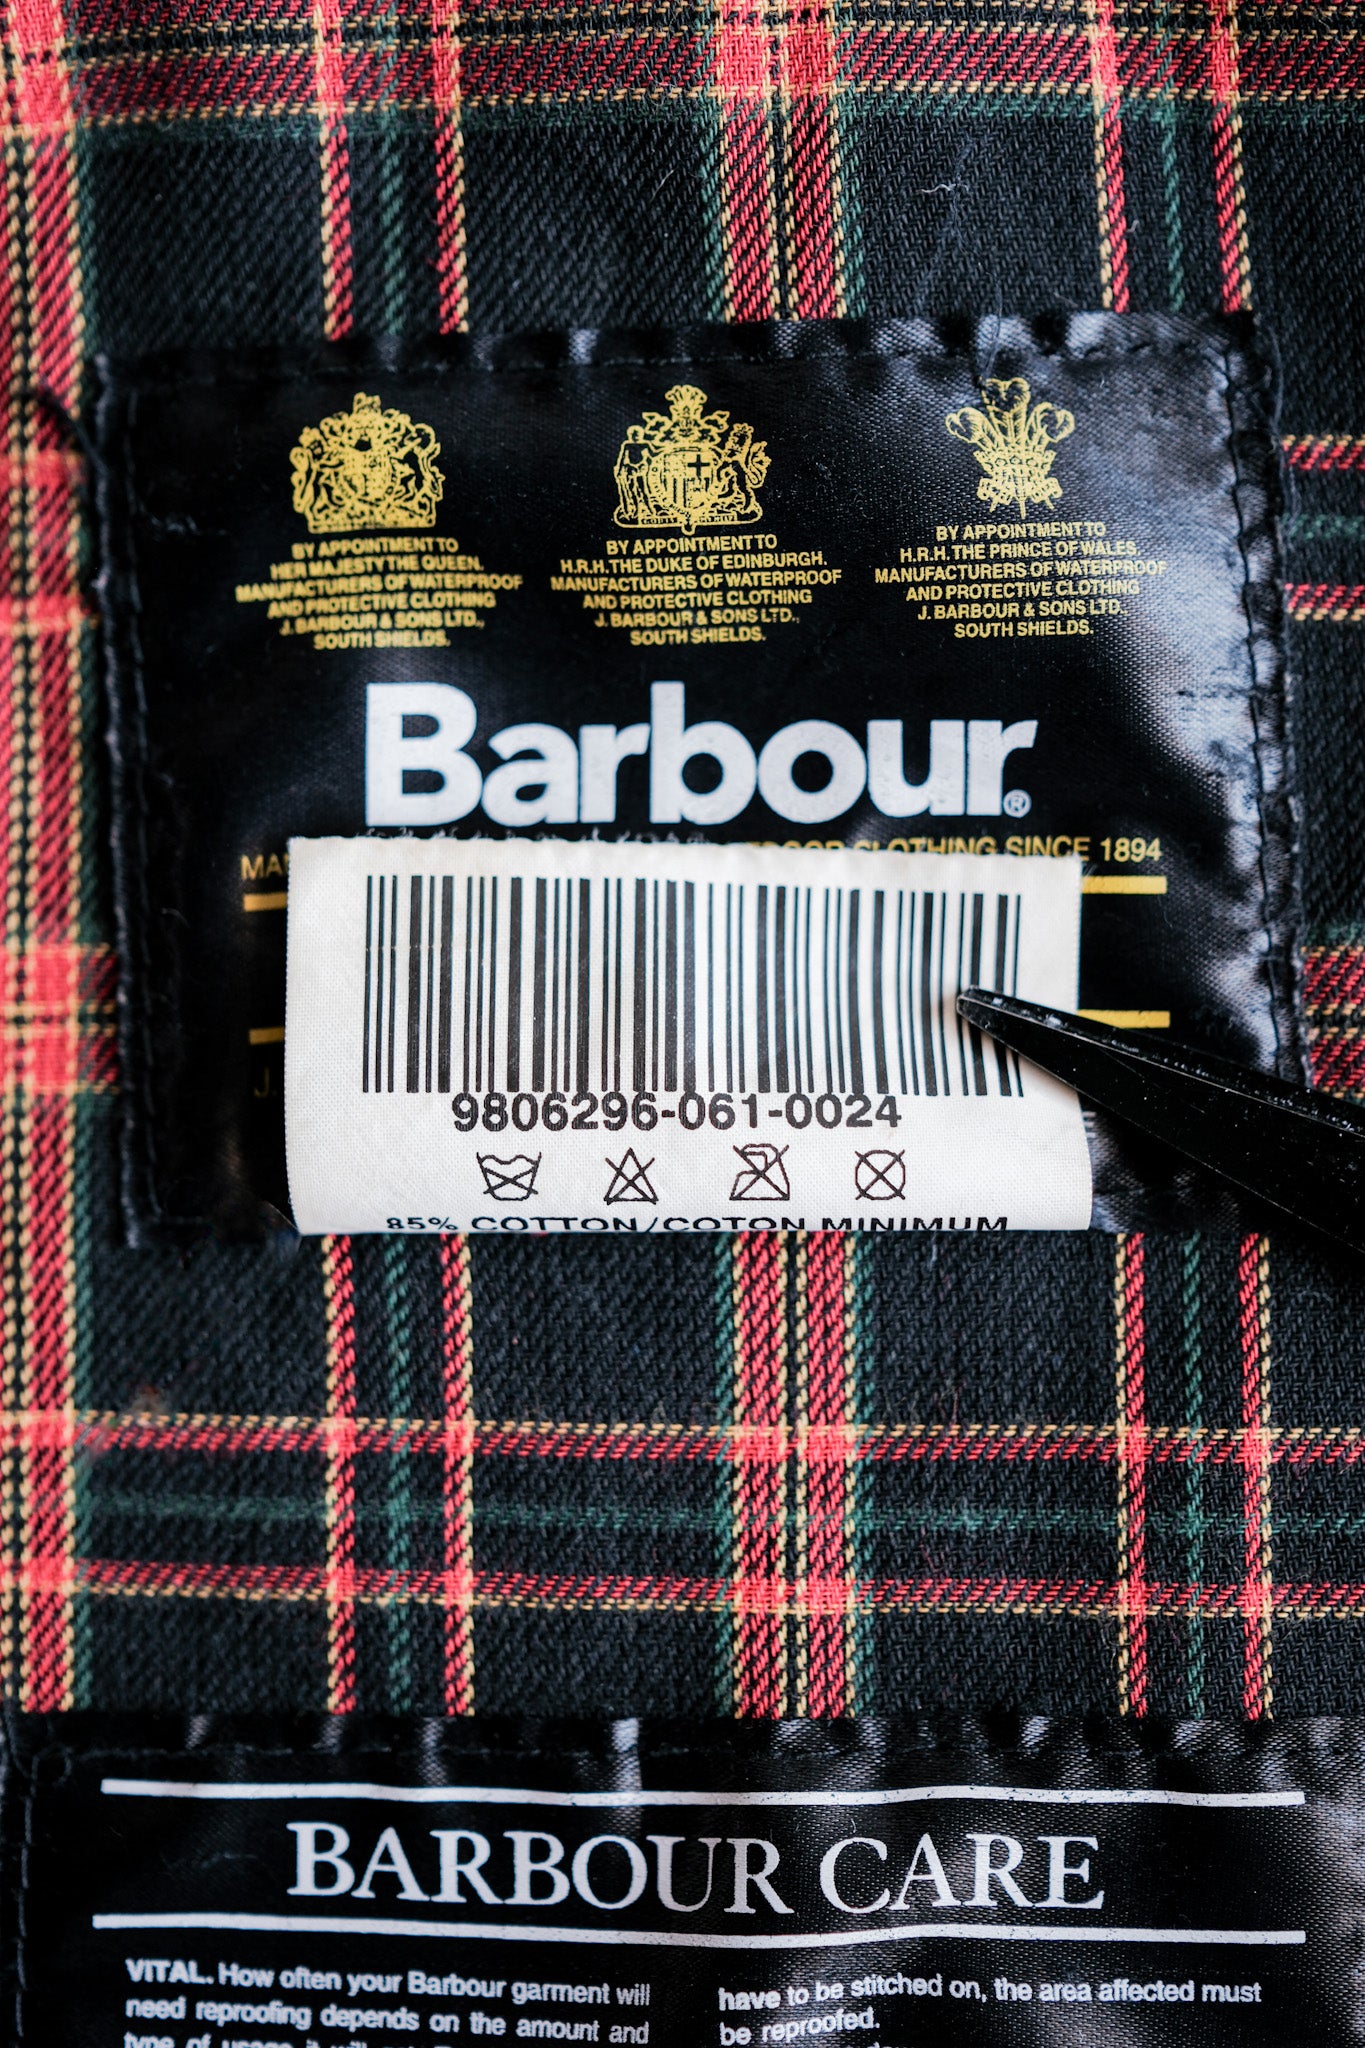 [~ 90's] Barbour Vintage "Wax Cotton Blouson" 3 ขนาดยอด